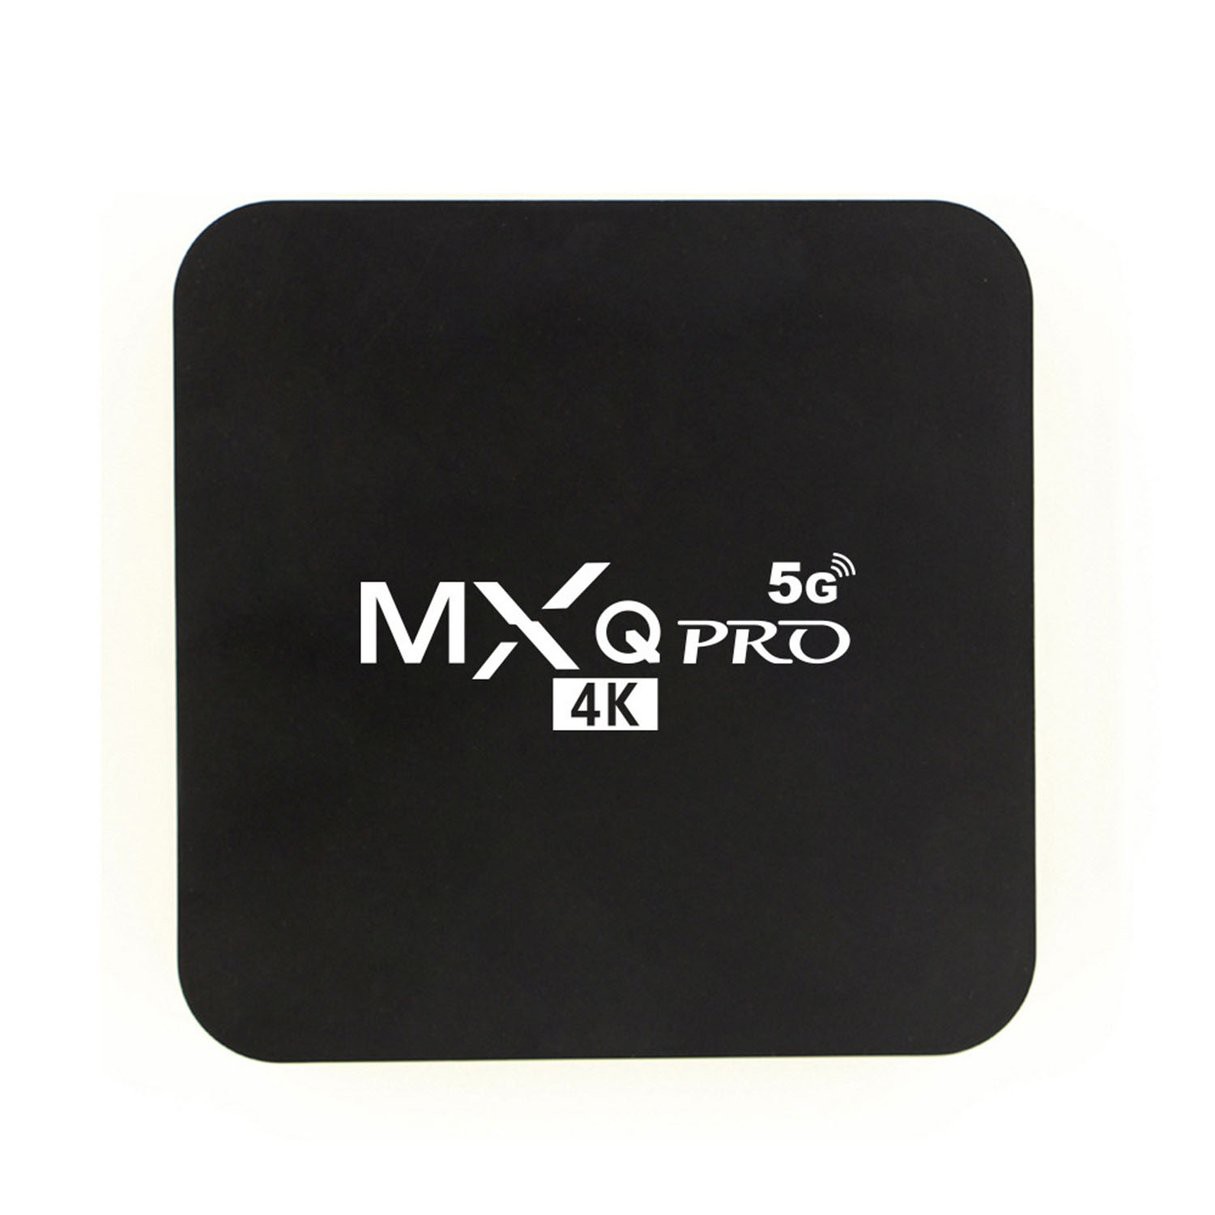 Đầu Mxqpro 5g 4k Tv Box Thông Minh Kết Nối Wifi